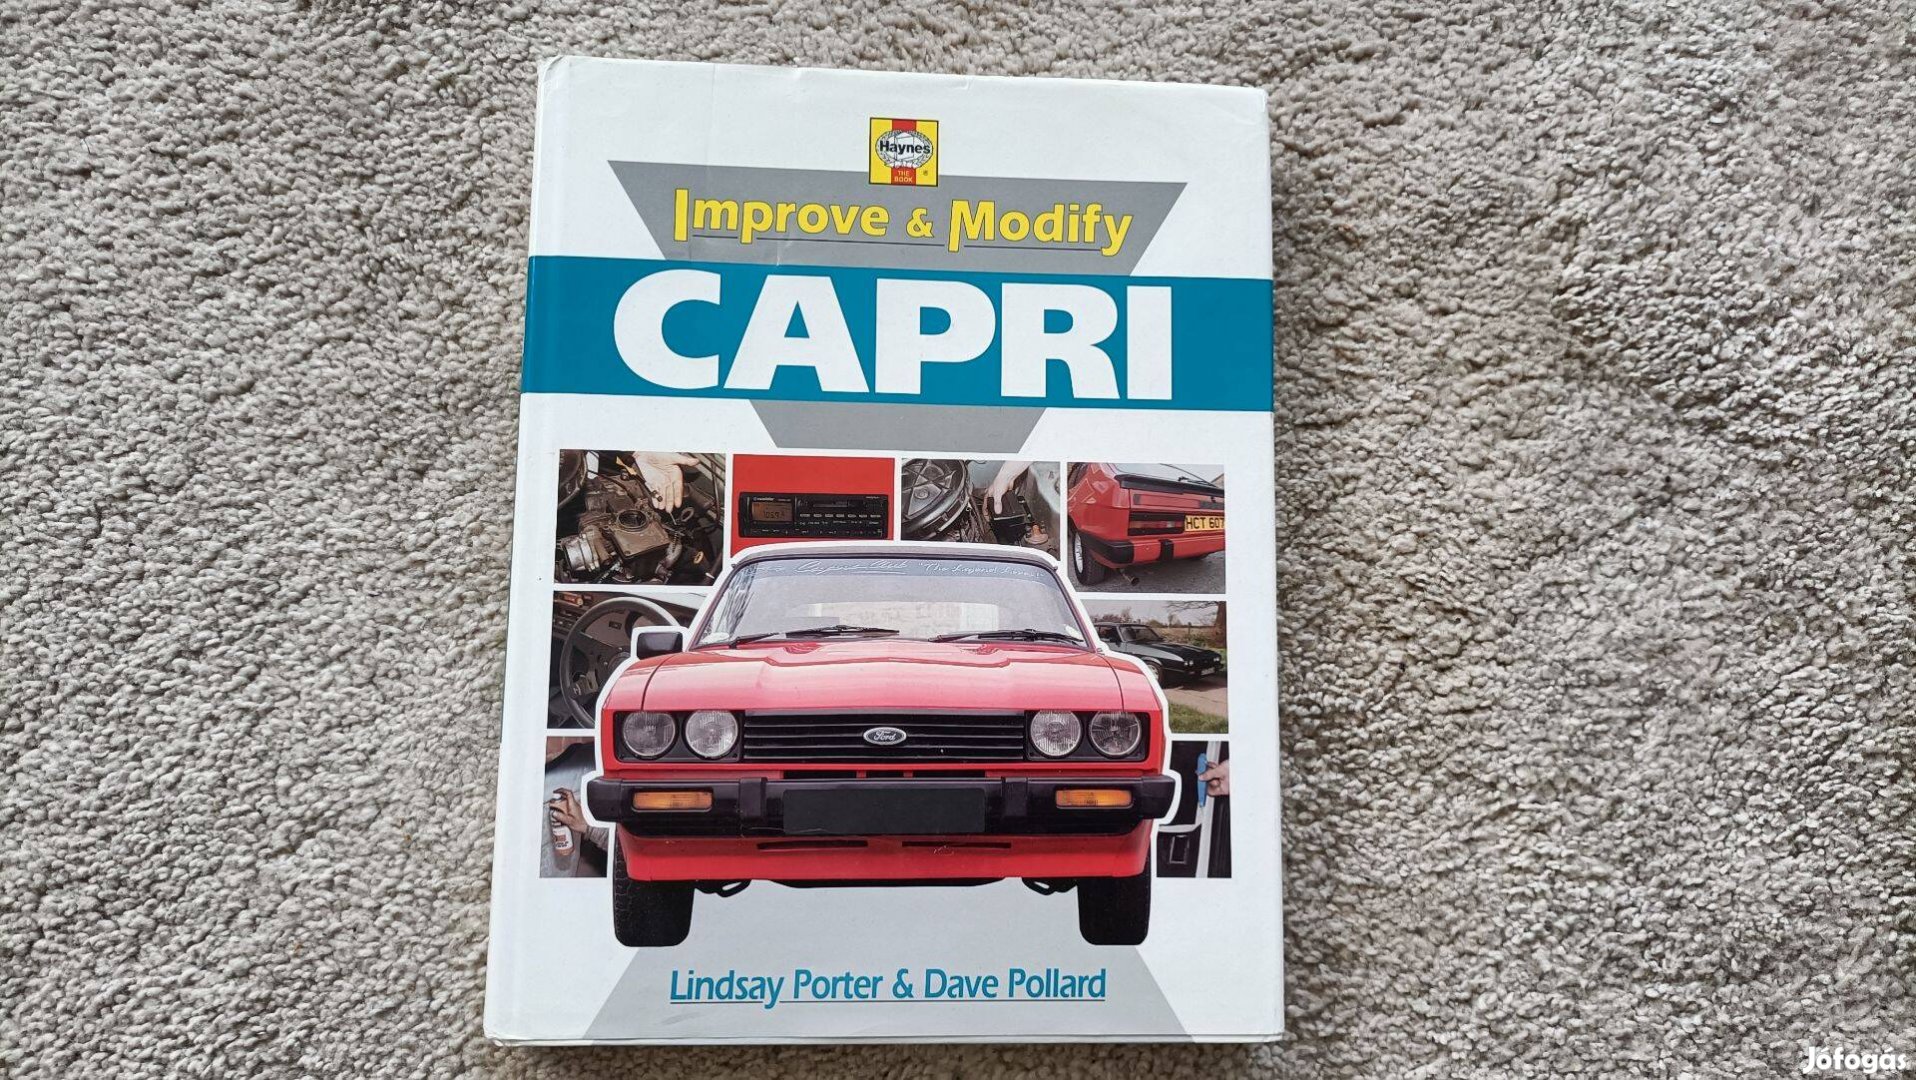 Ford Capri Improve and modify